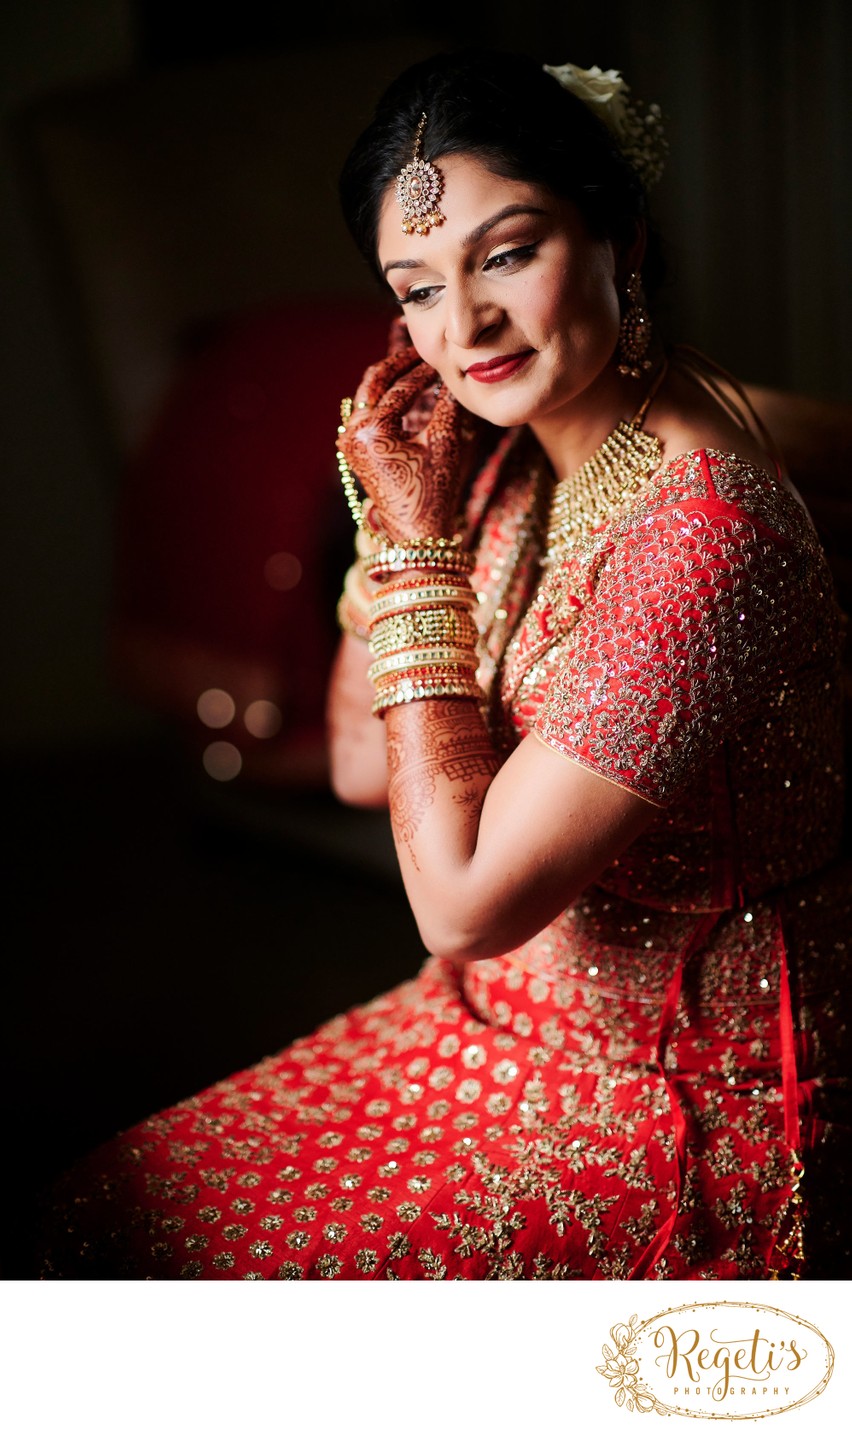 Hindu Bride Getting Ready